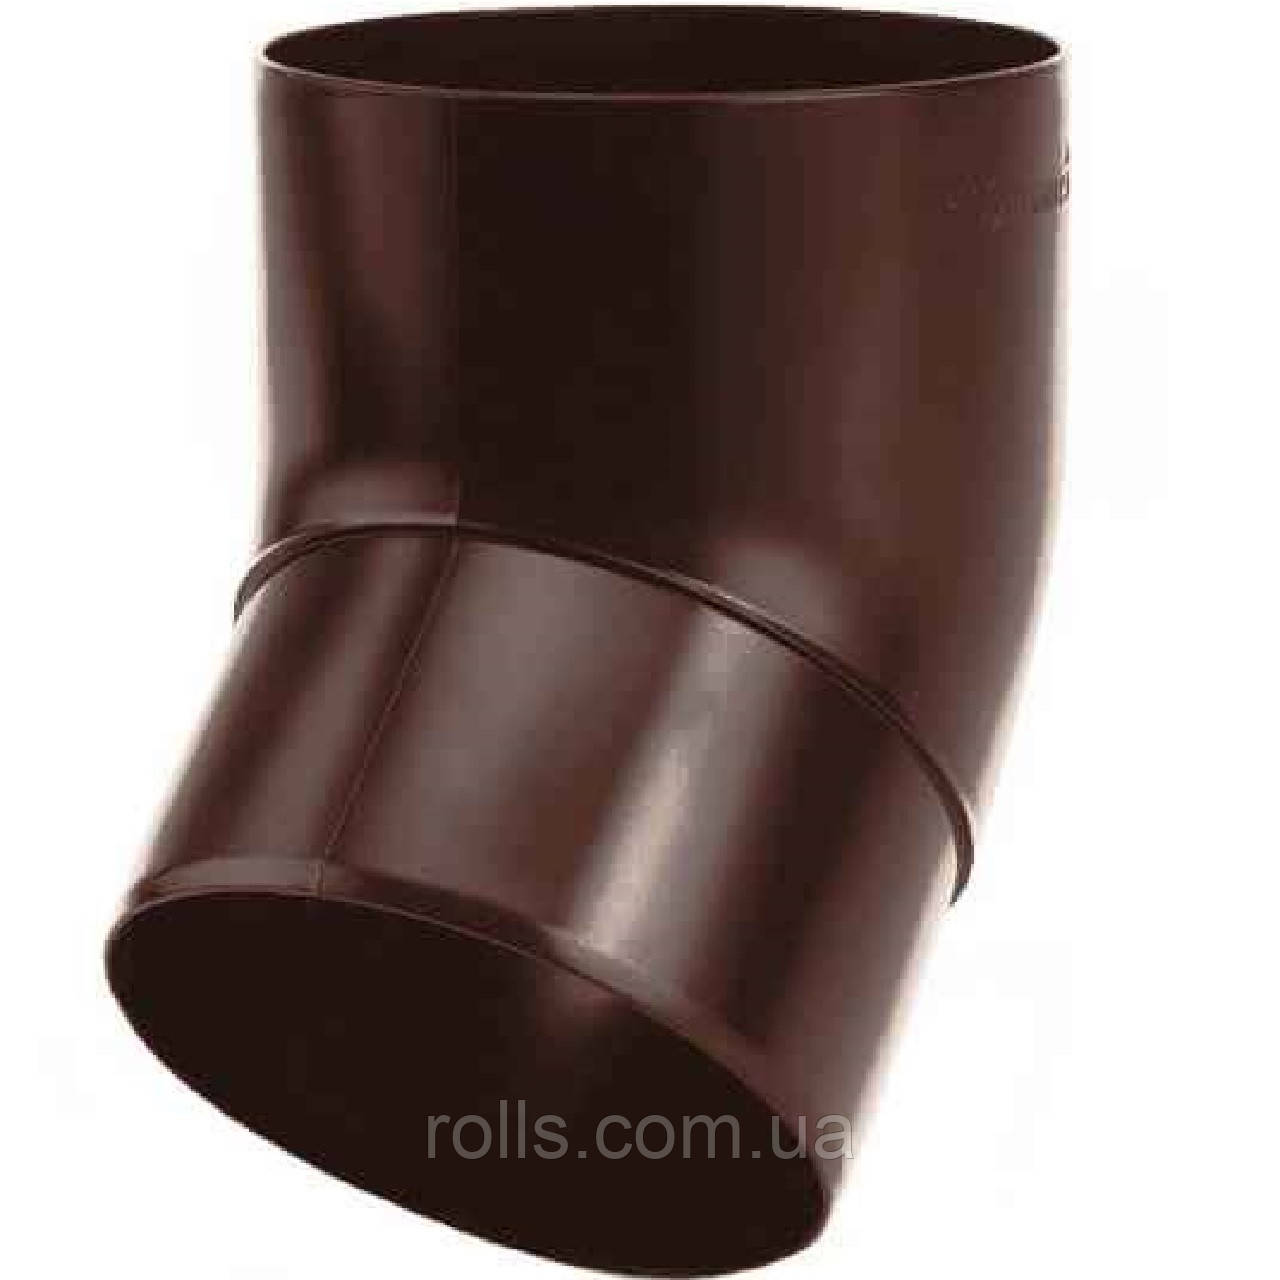 Колено 67° Galeco PVC 130/80 коліно 67° труби водостічної SP080-_-KO067-G Шоколадно-коричневий